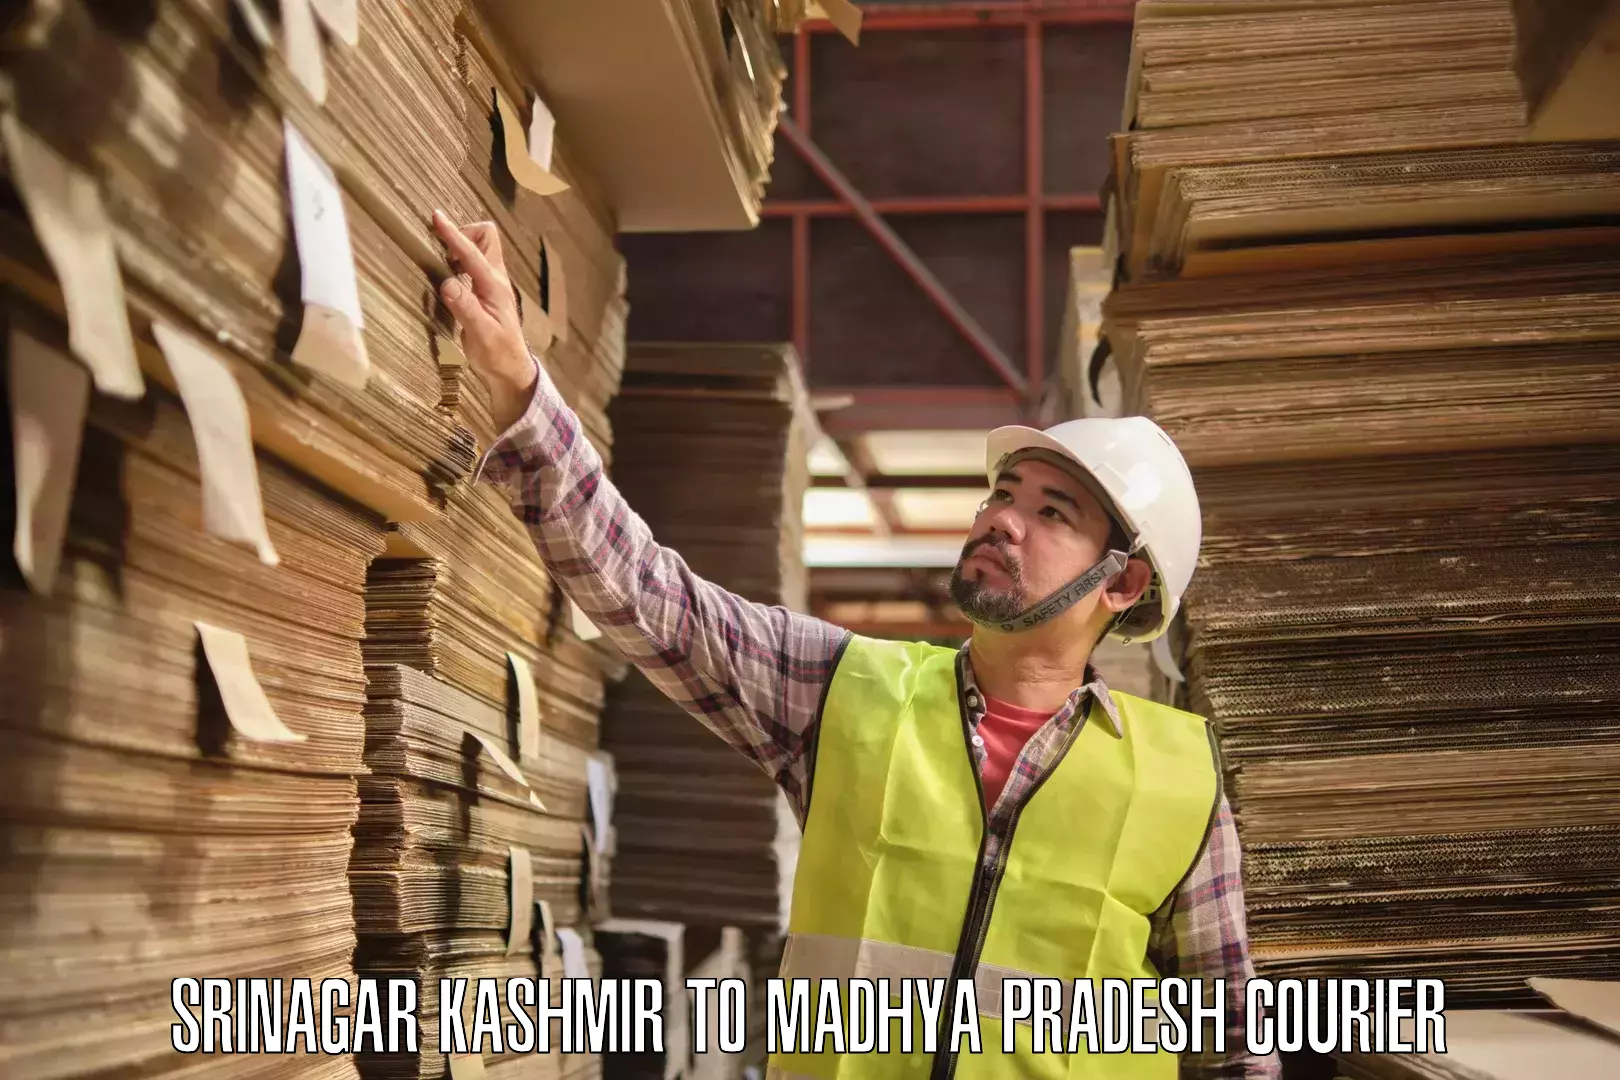 High-capacity parcel service Srinagar Kashmir to Jhunku